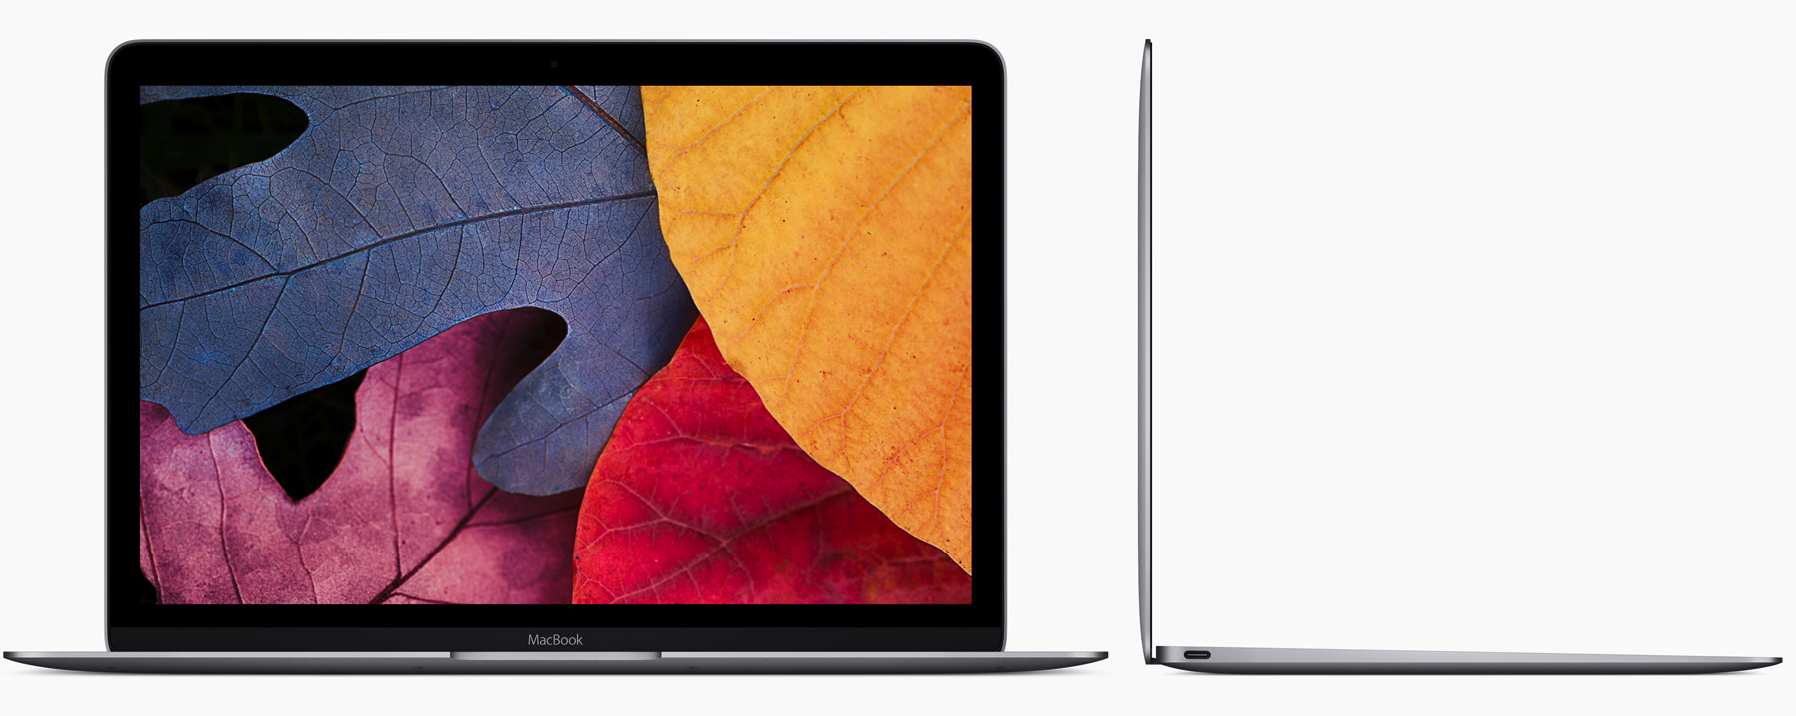 Nuevo Macbook 12 pulgadas presentado por Apple